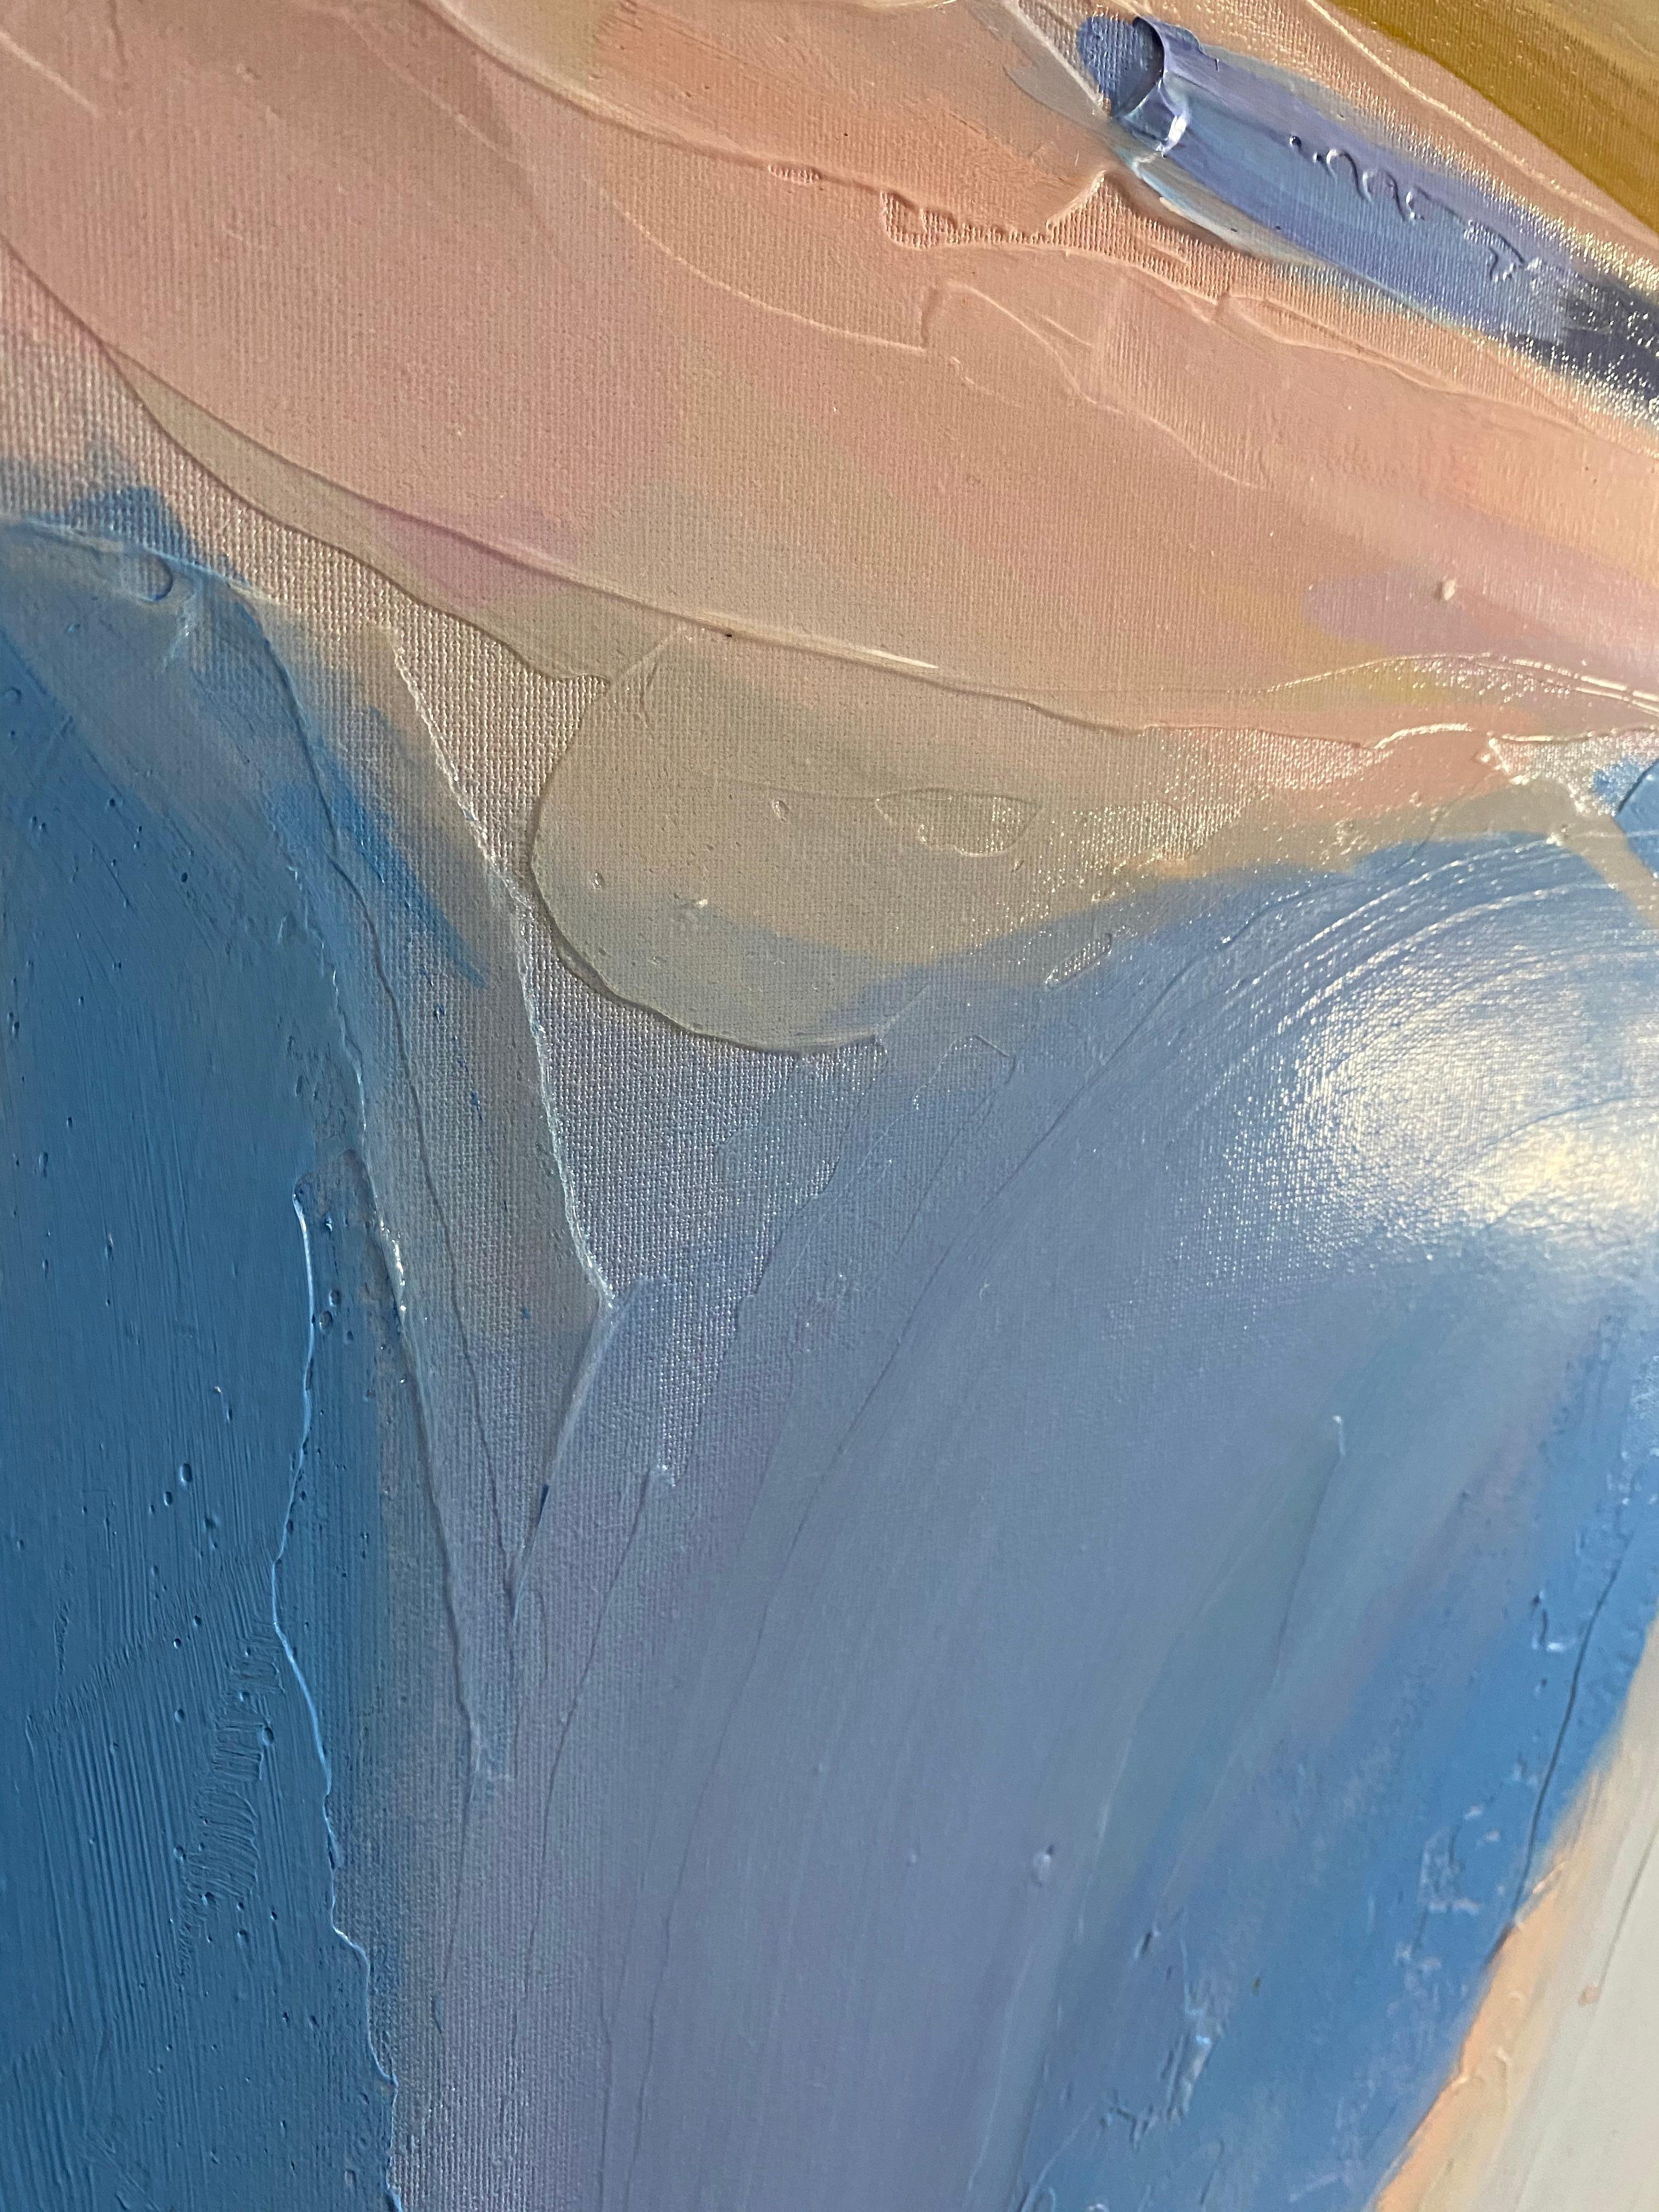 Peinture contemporaine bleue blanche sur toile technique mixte 101,6 cm x 152,4 cm Fresh Air - Gris Abstract Painting par Irena Orlov